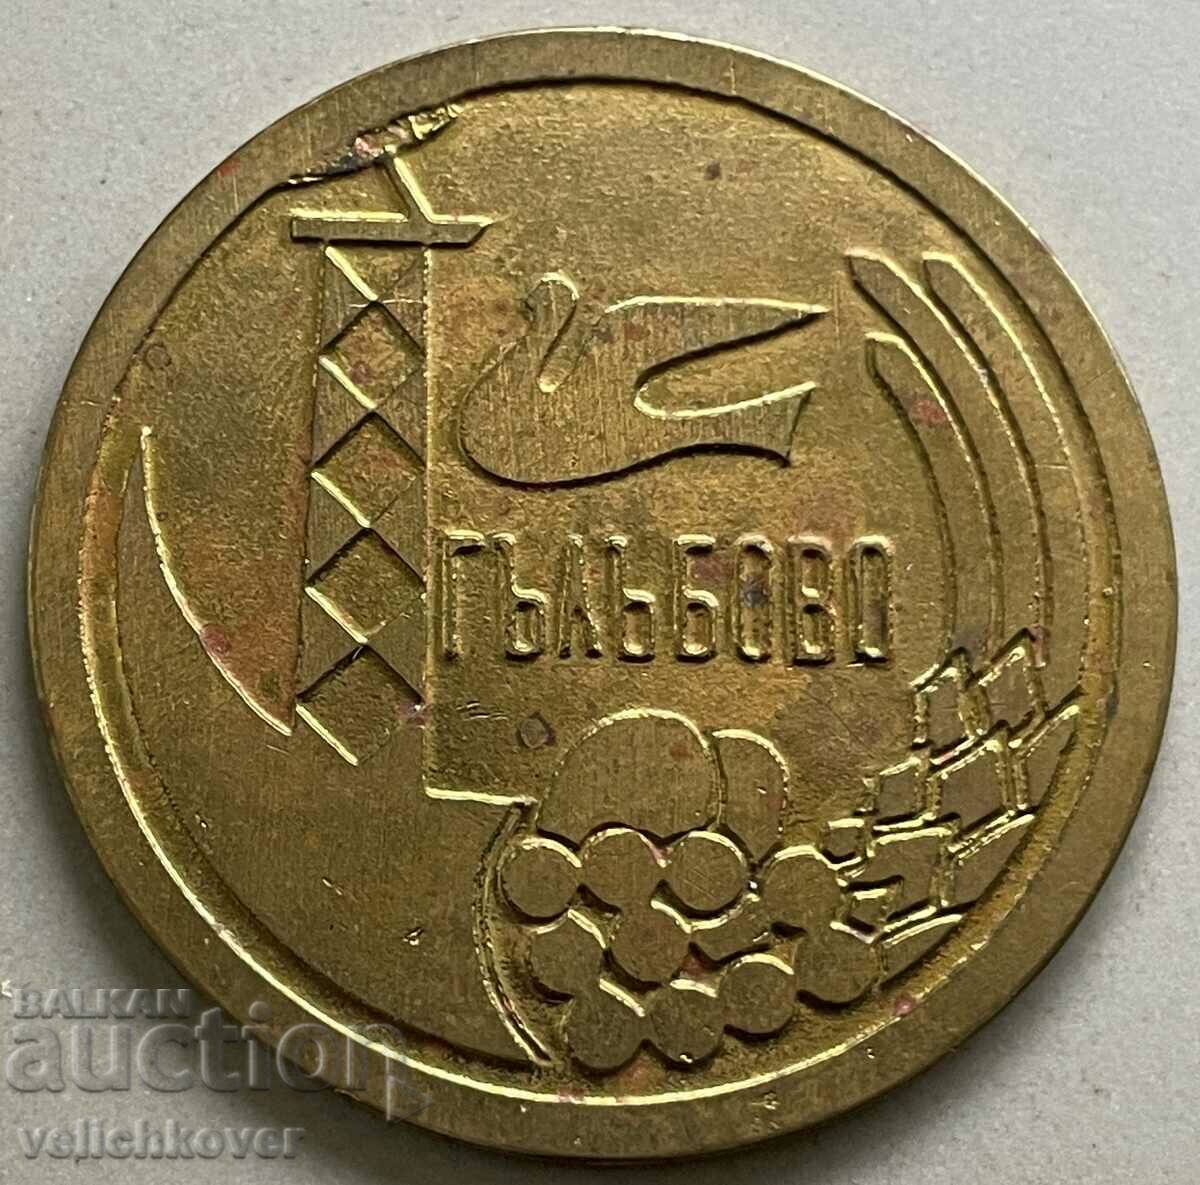 34195 България плакет 100г. град Гълъбово герб 1973г.